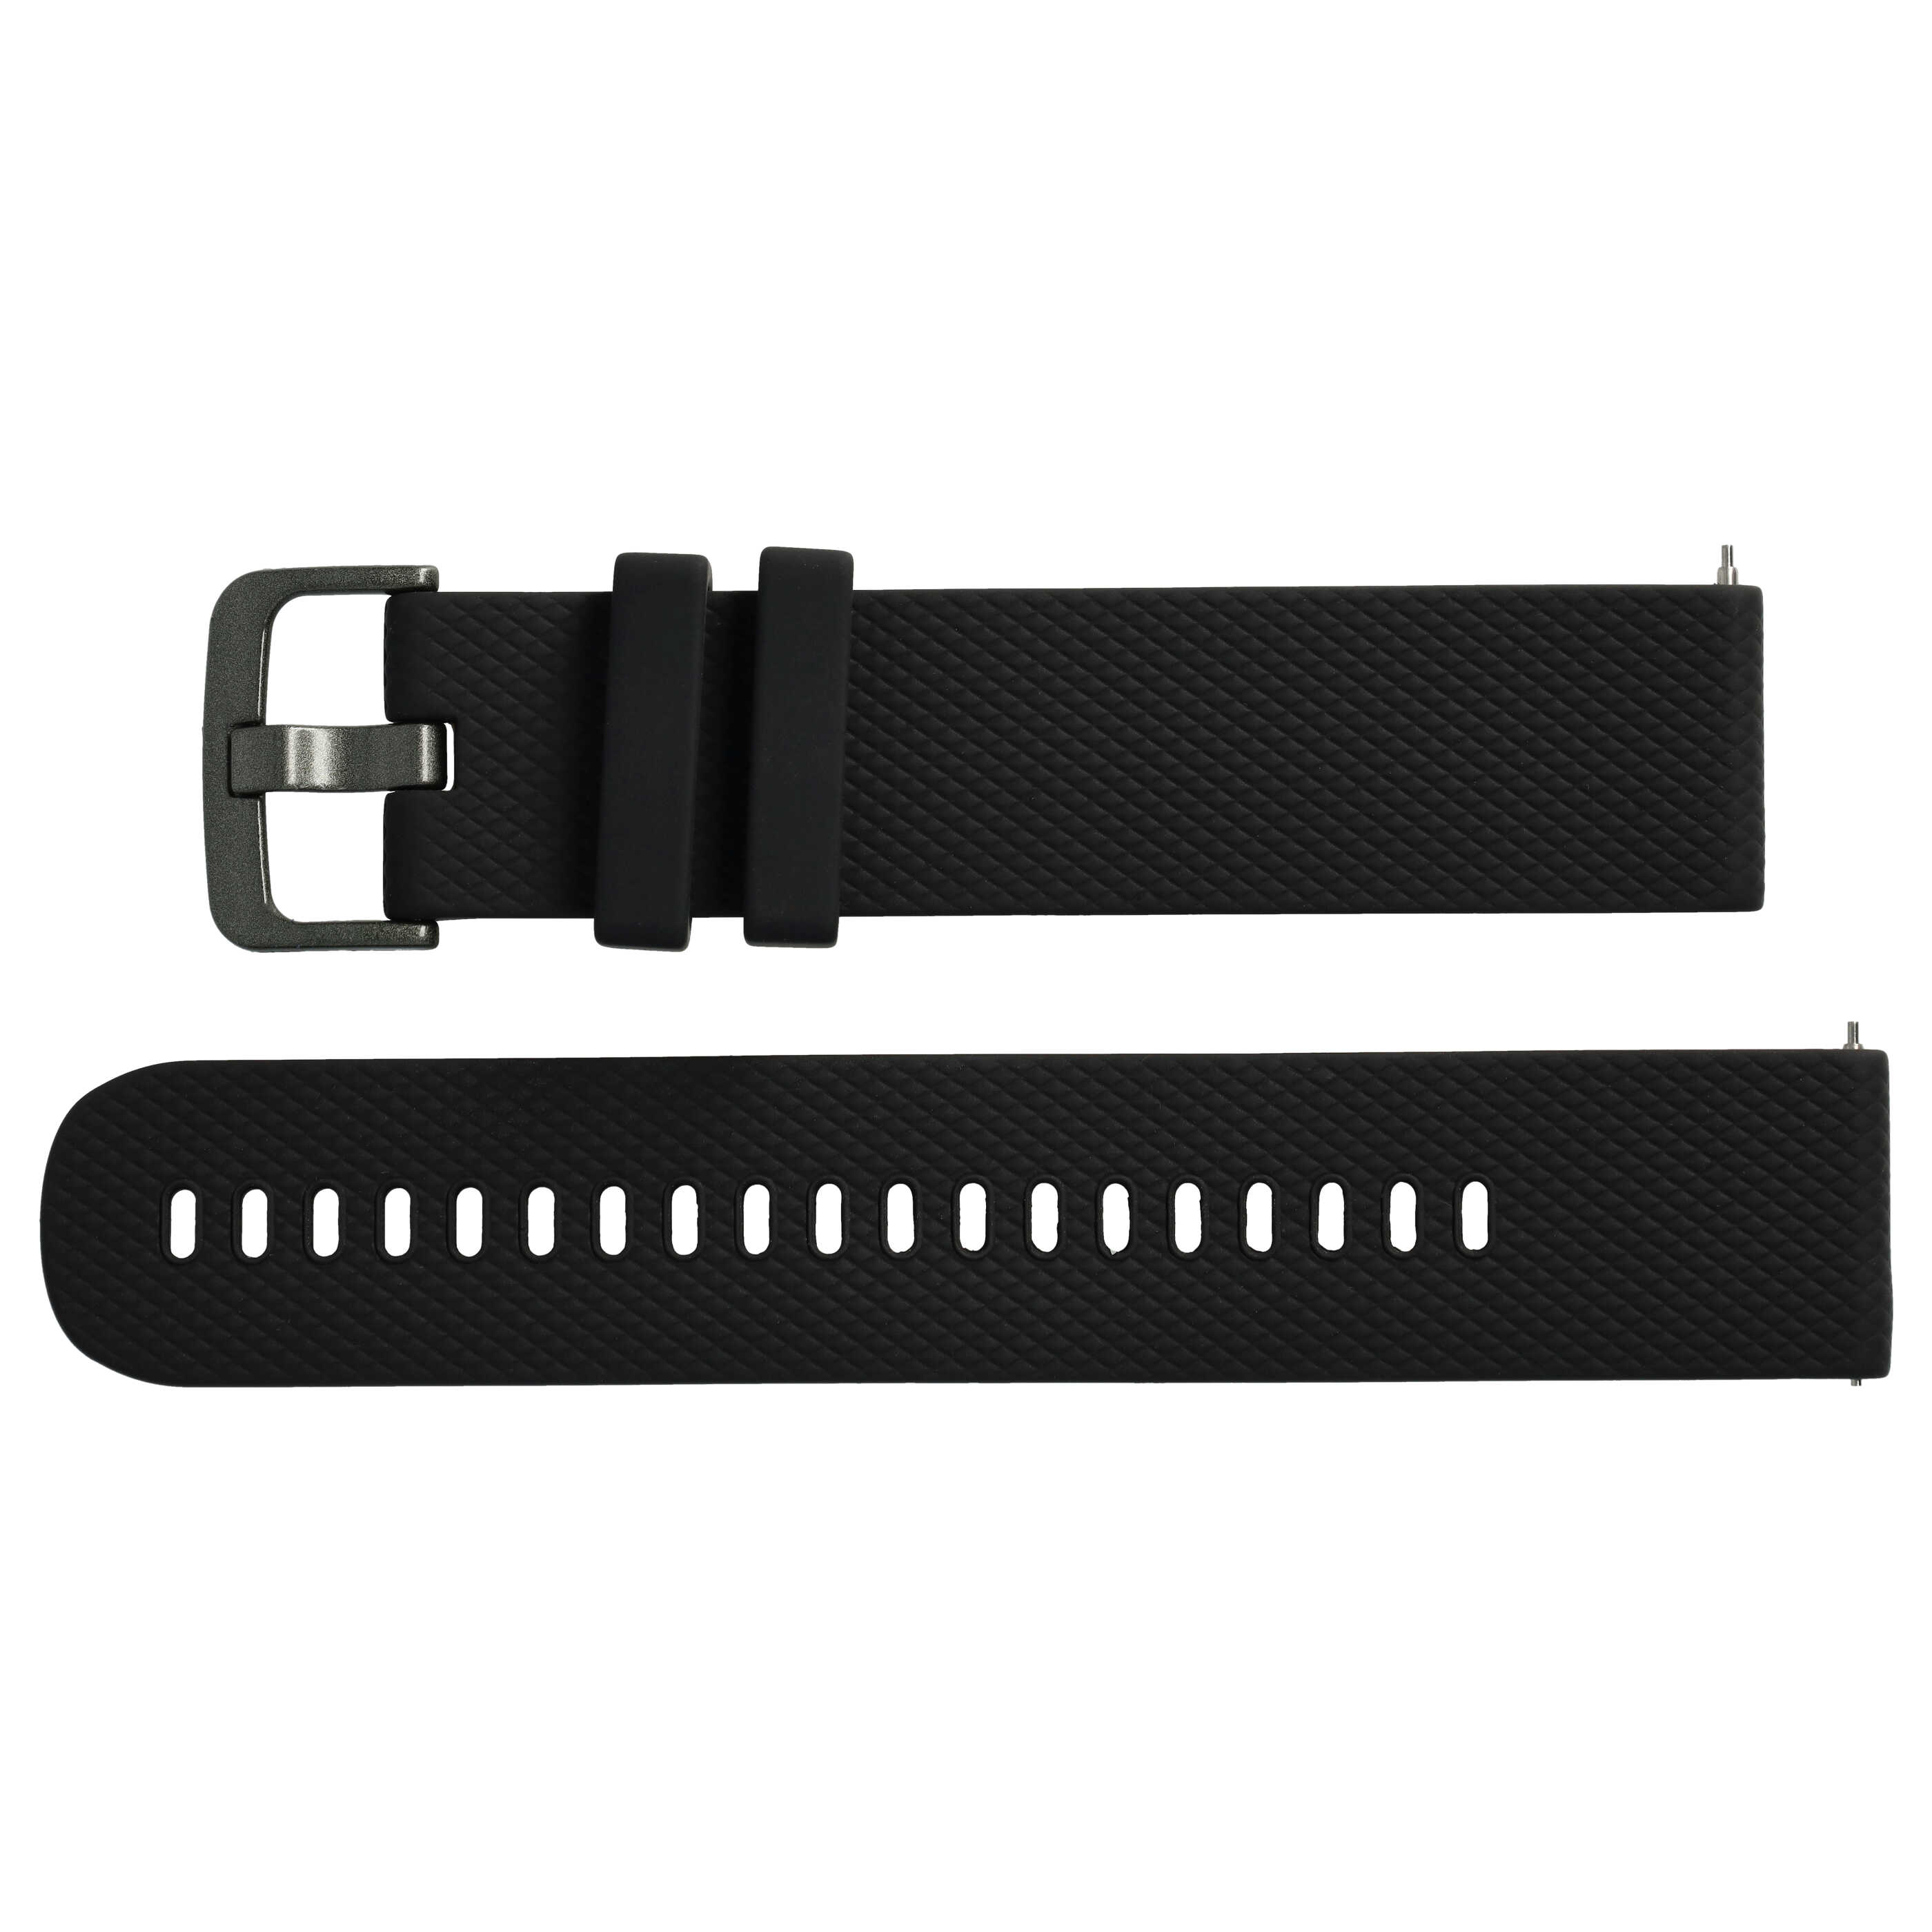 Bracelet L de remplacement pour montre intelligente Samsung Galaxy Watch - tour de montre max 270 mm, silicone